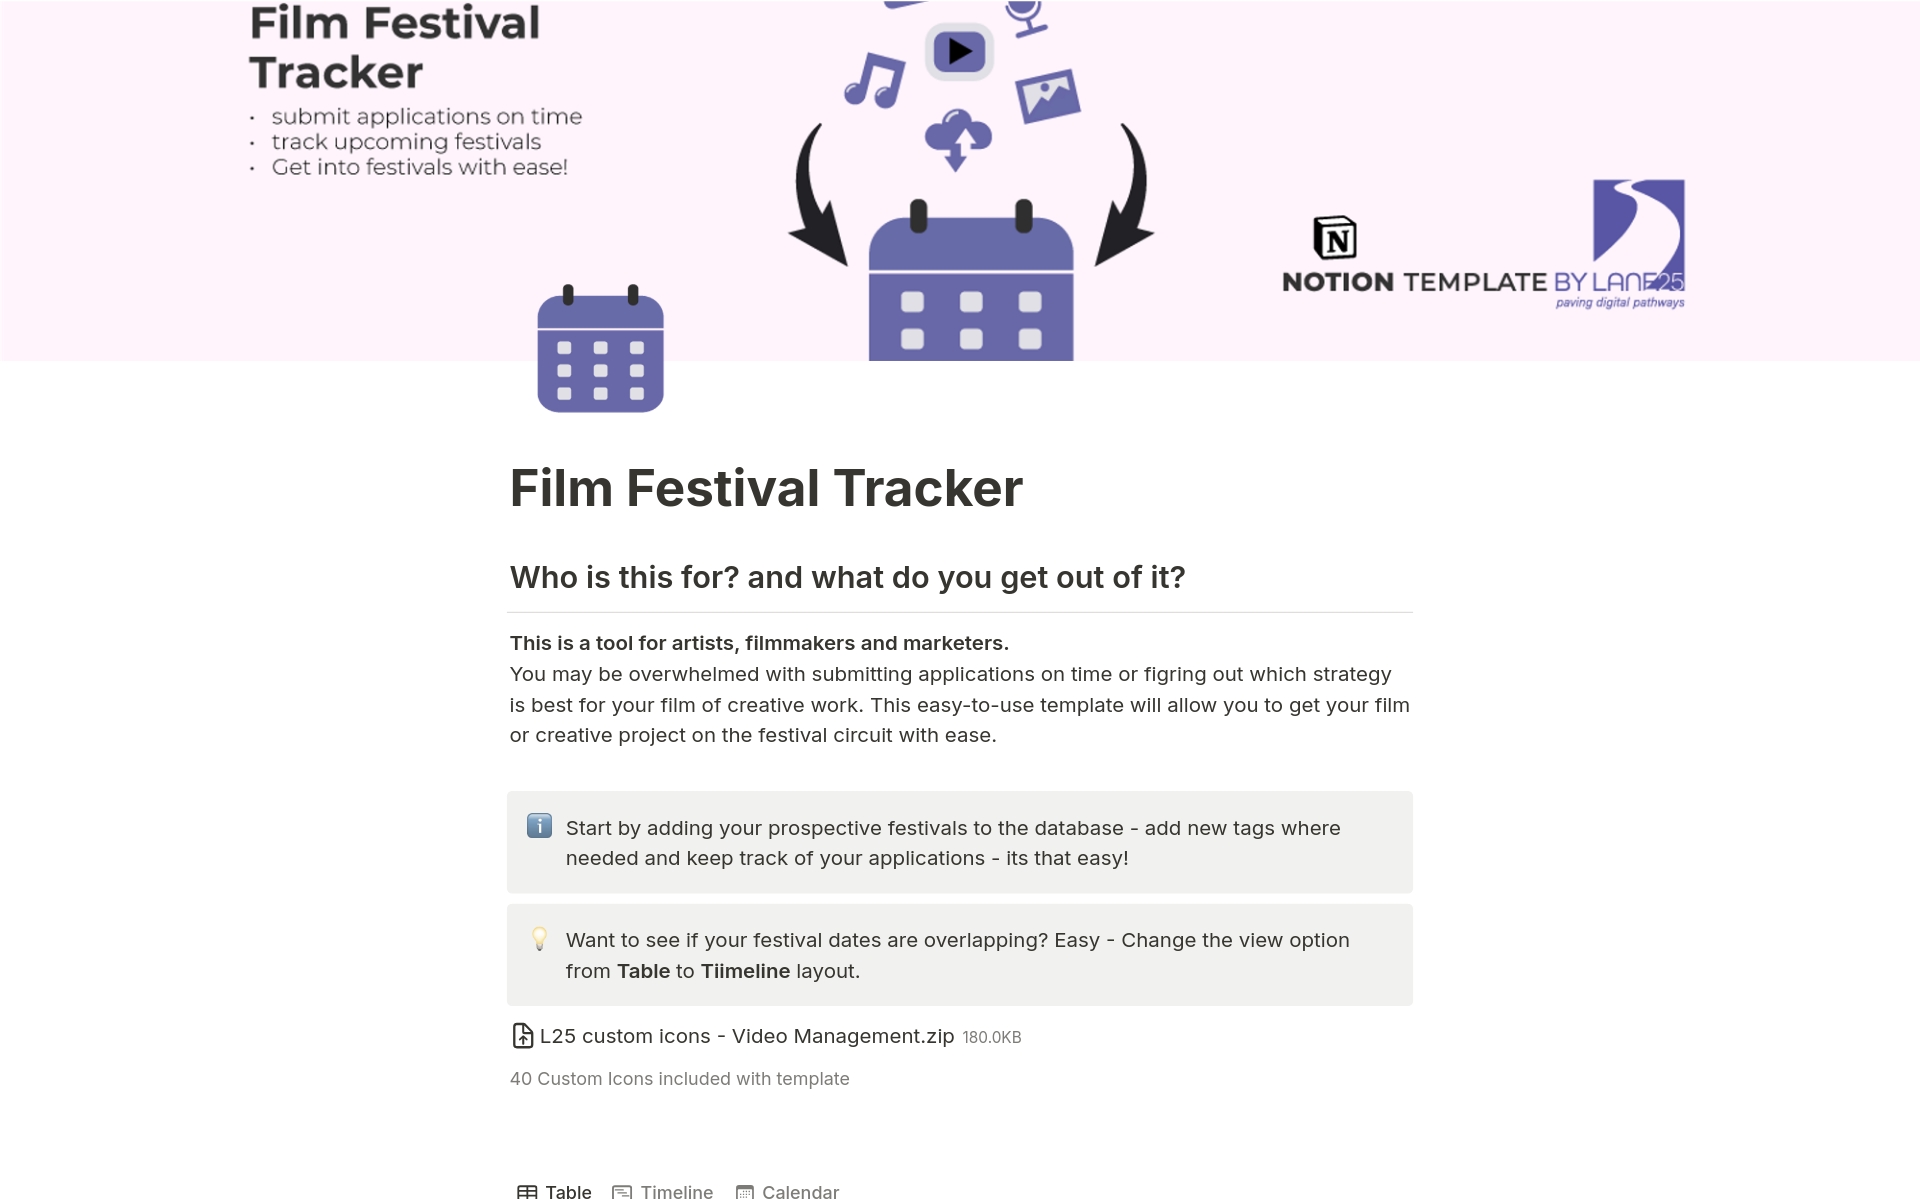 Uma prévia do modelo para Film Festival Tracker